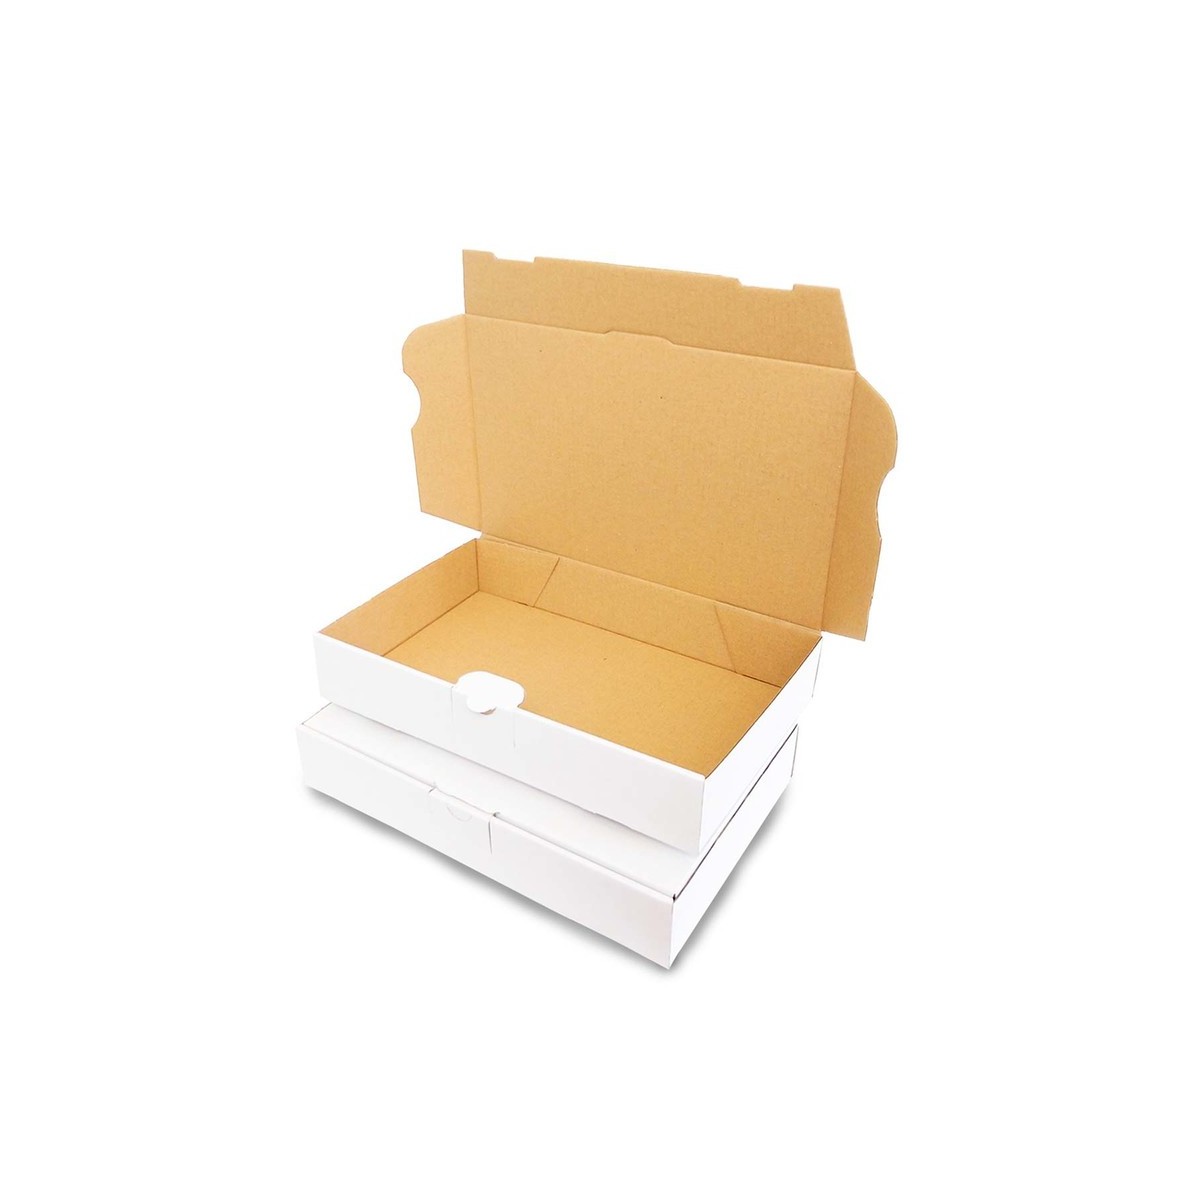 Boîte pour expédition en carton blanc 240x160x45mm